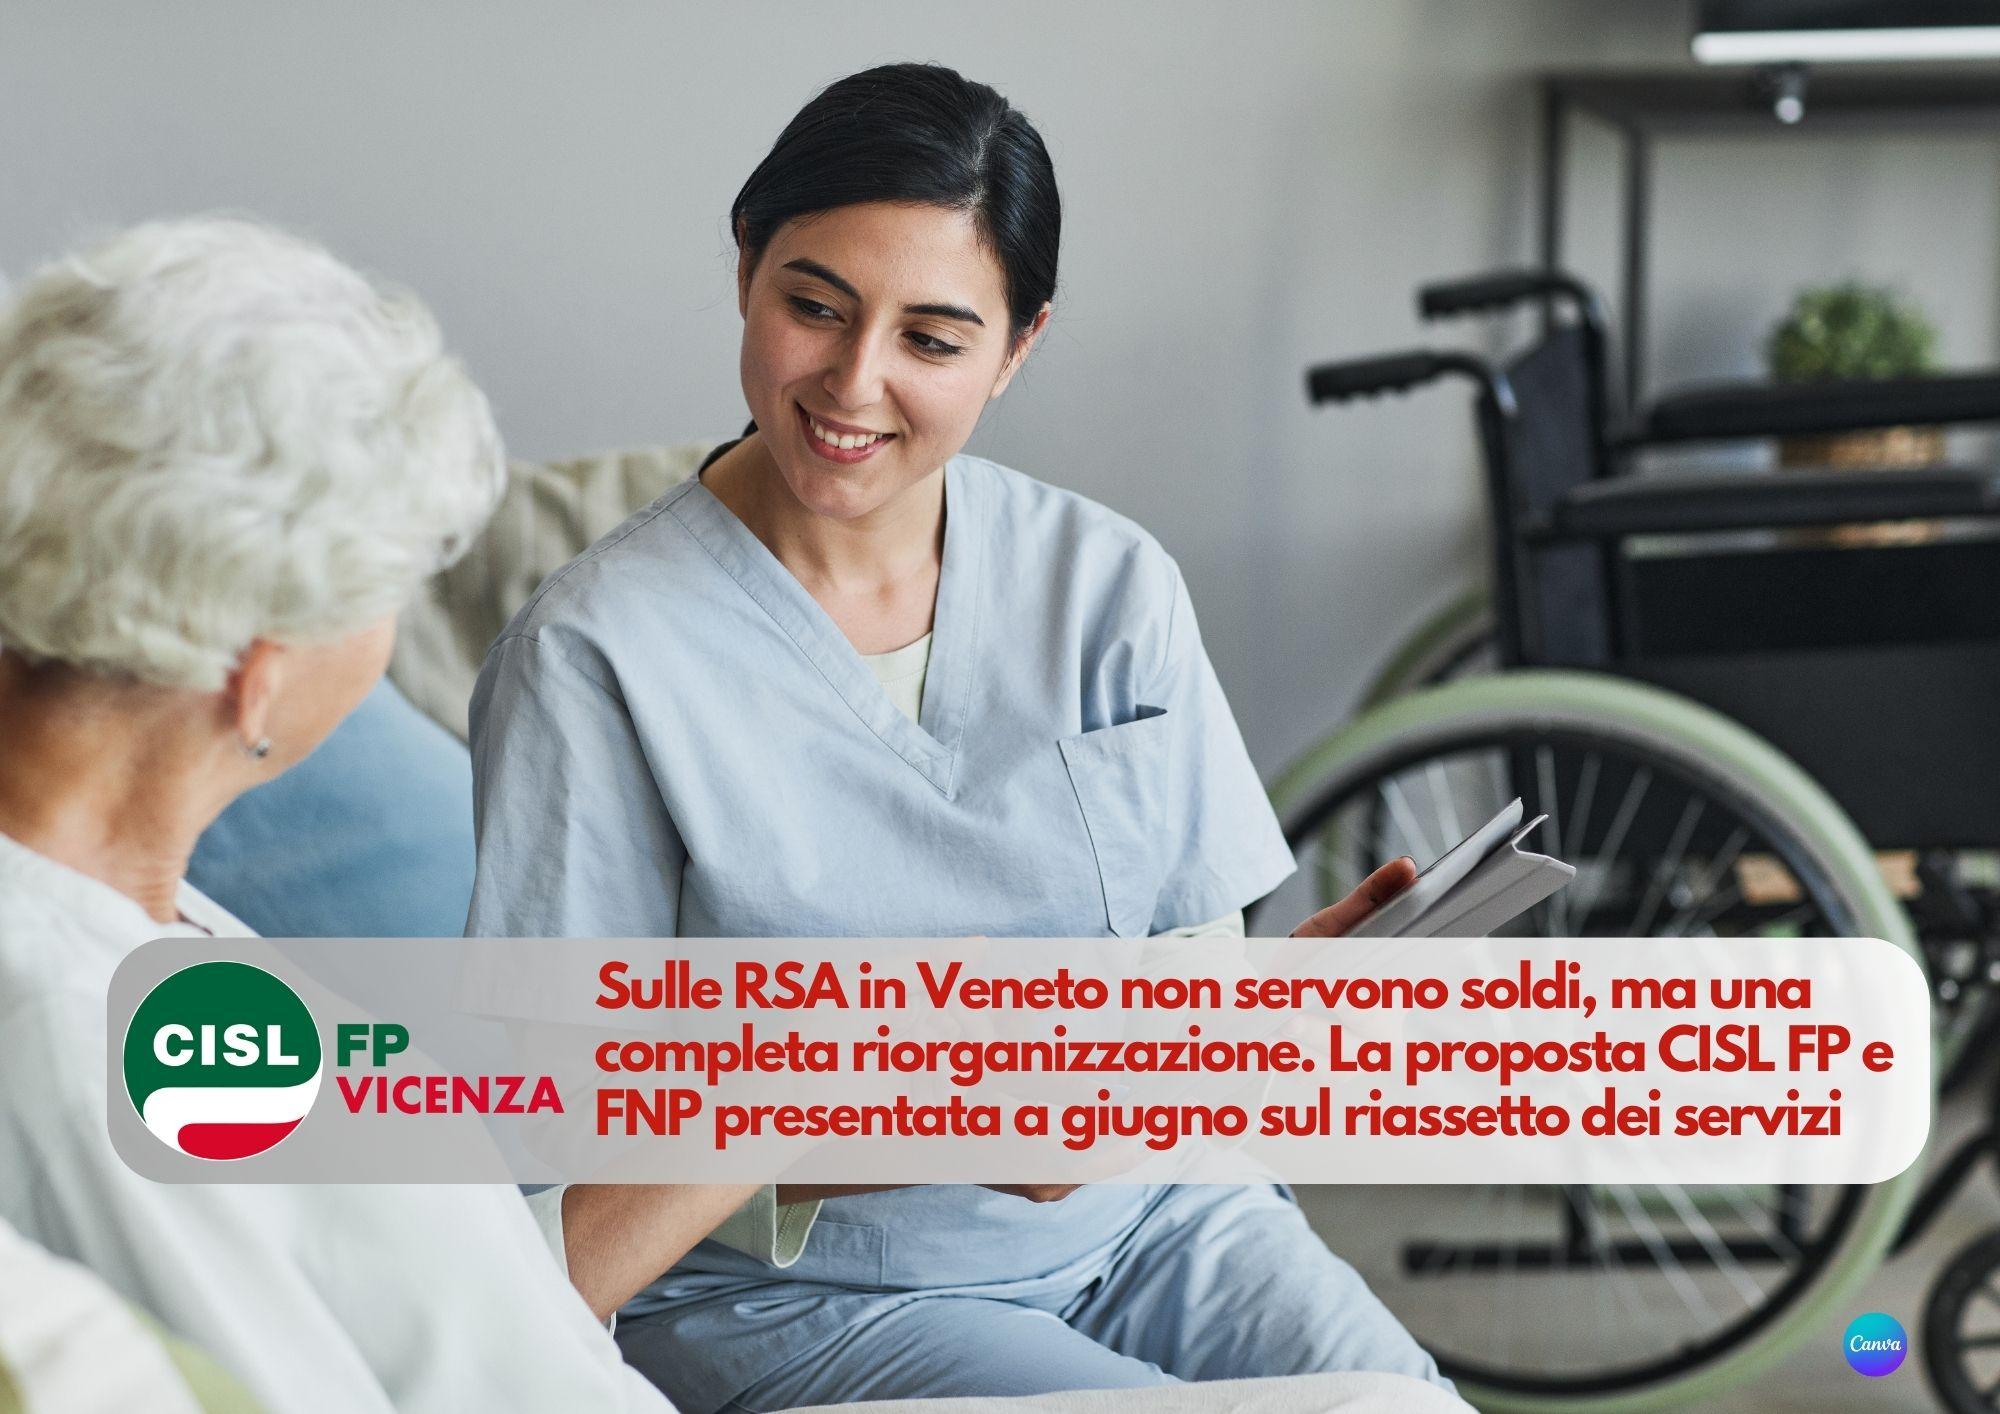 CISL FP Vicenza. RSA: non servono soldi, ma una completa riorganizzazione. La proposta CISL FP e FNP